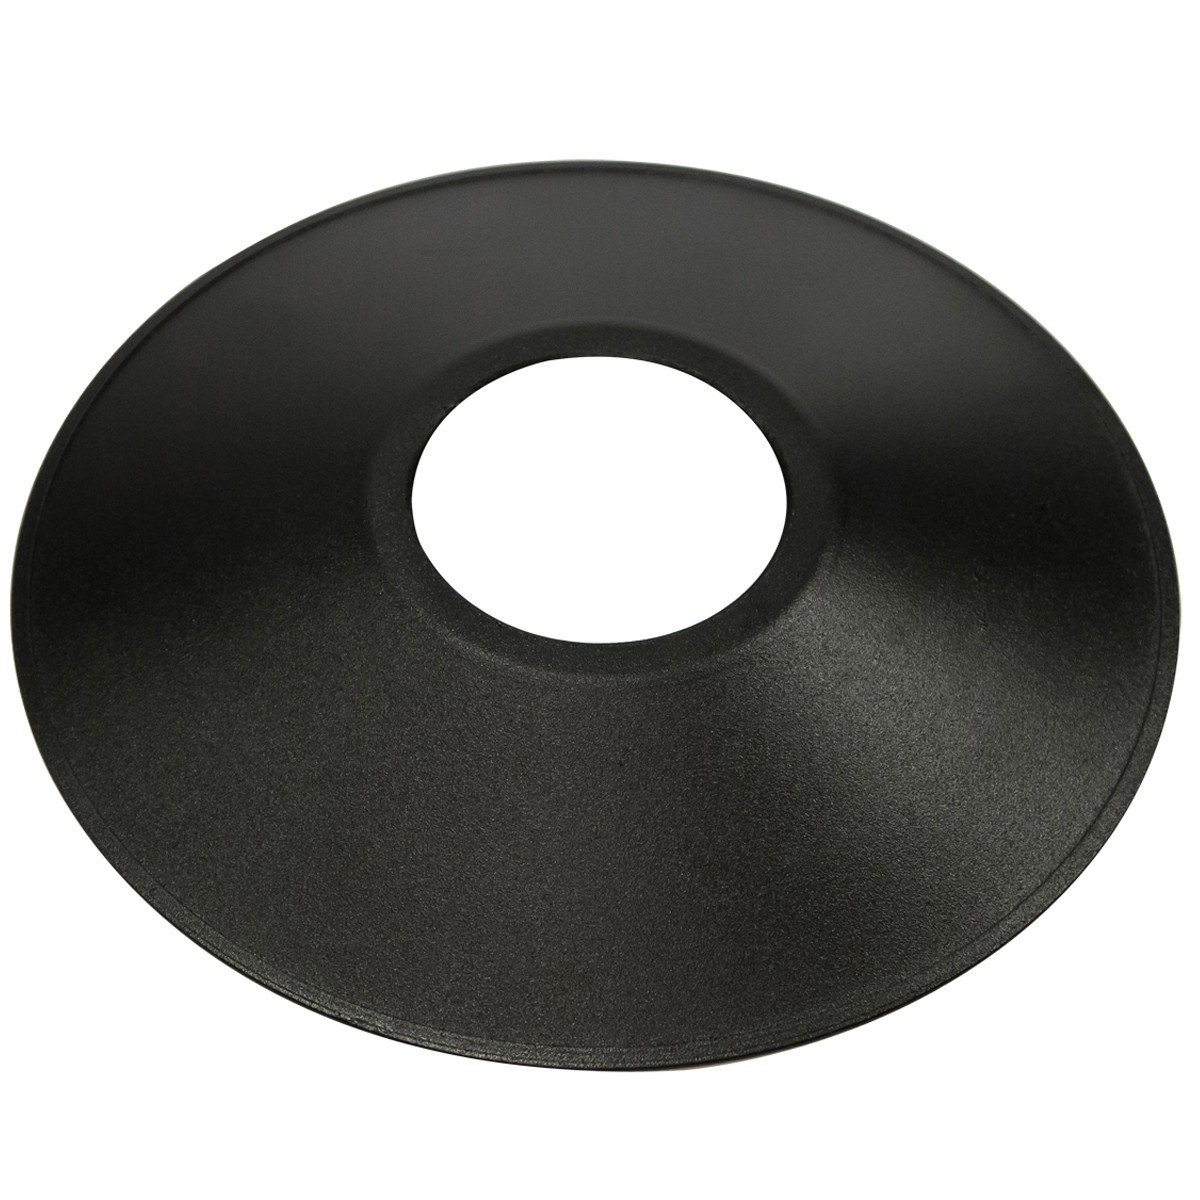 Σκιάδα Φ25cm Μαύρο Χρώμα Με Οπή Φ7.5cm         VK/03041/75/B